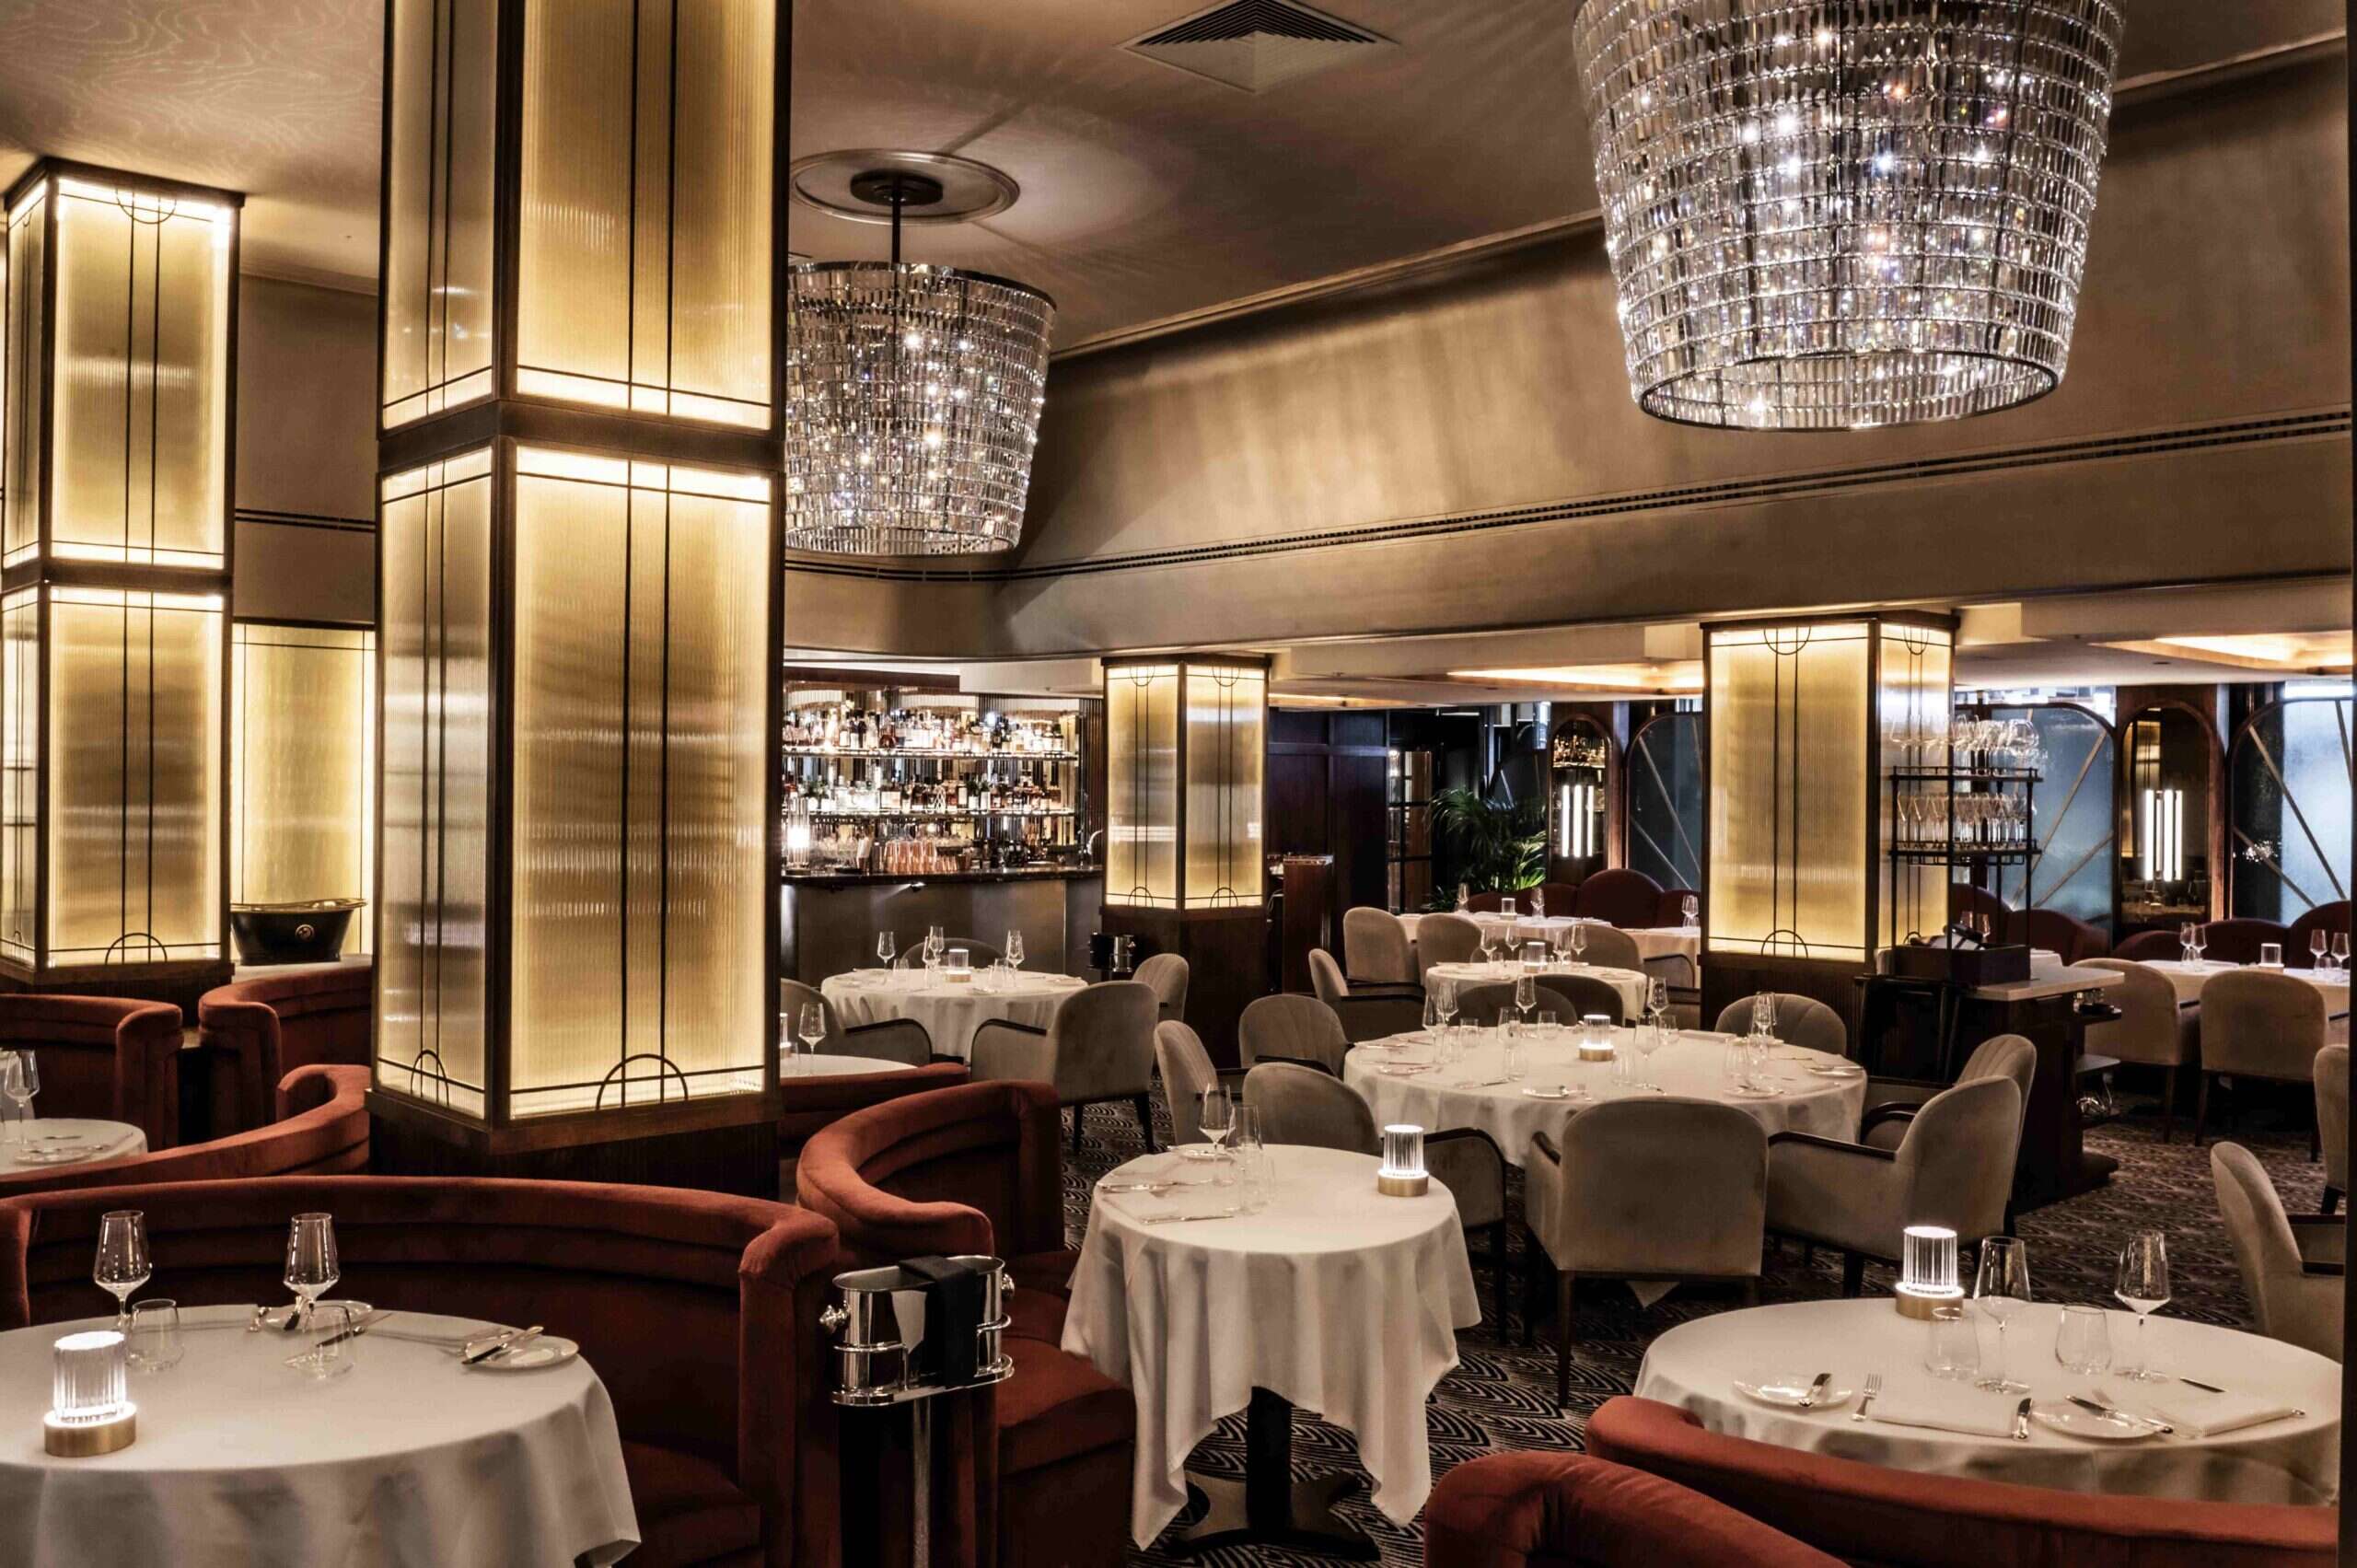 Savoy Grill: Historic Dining Room Rejuvenated